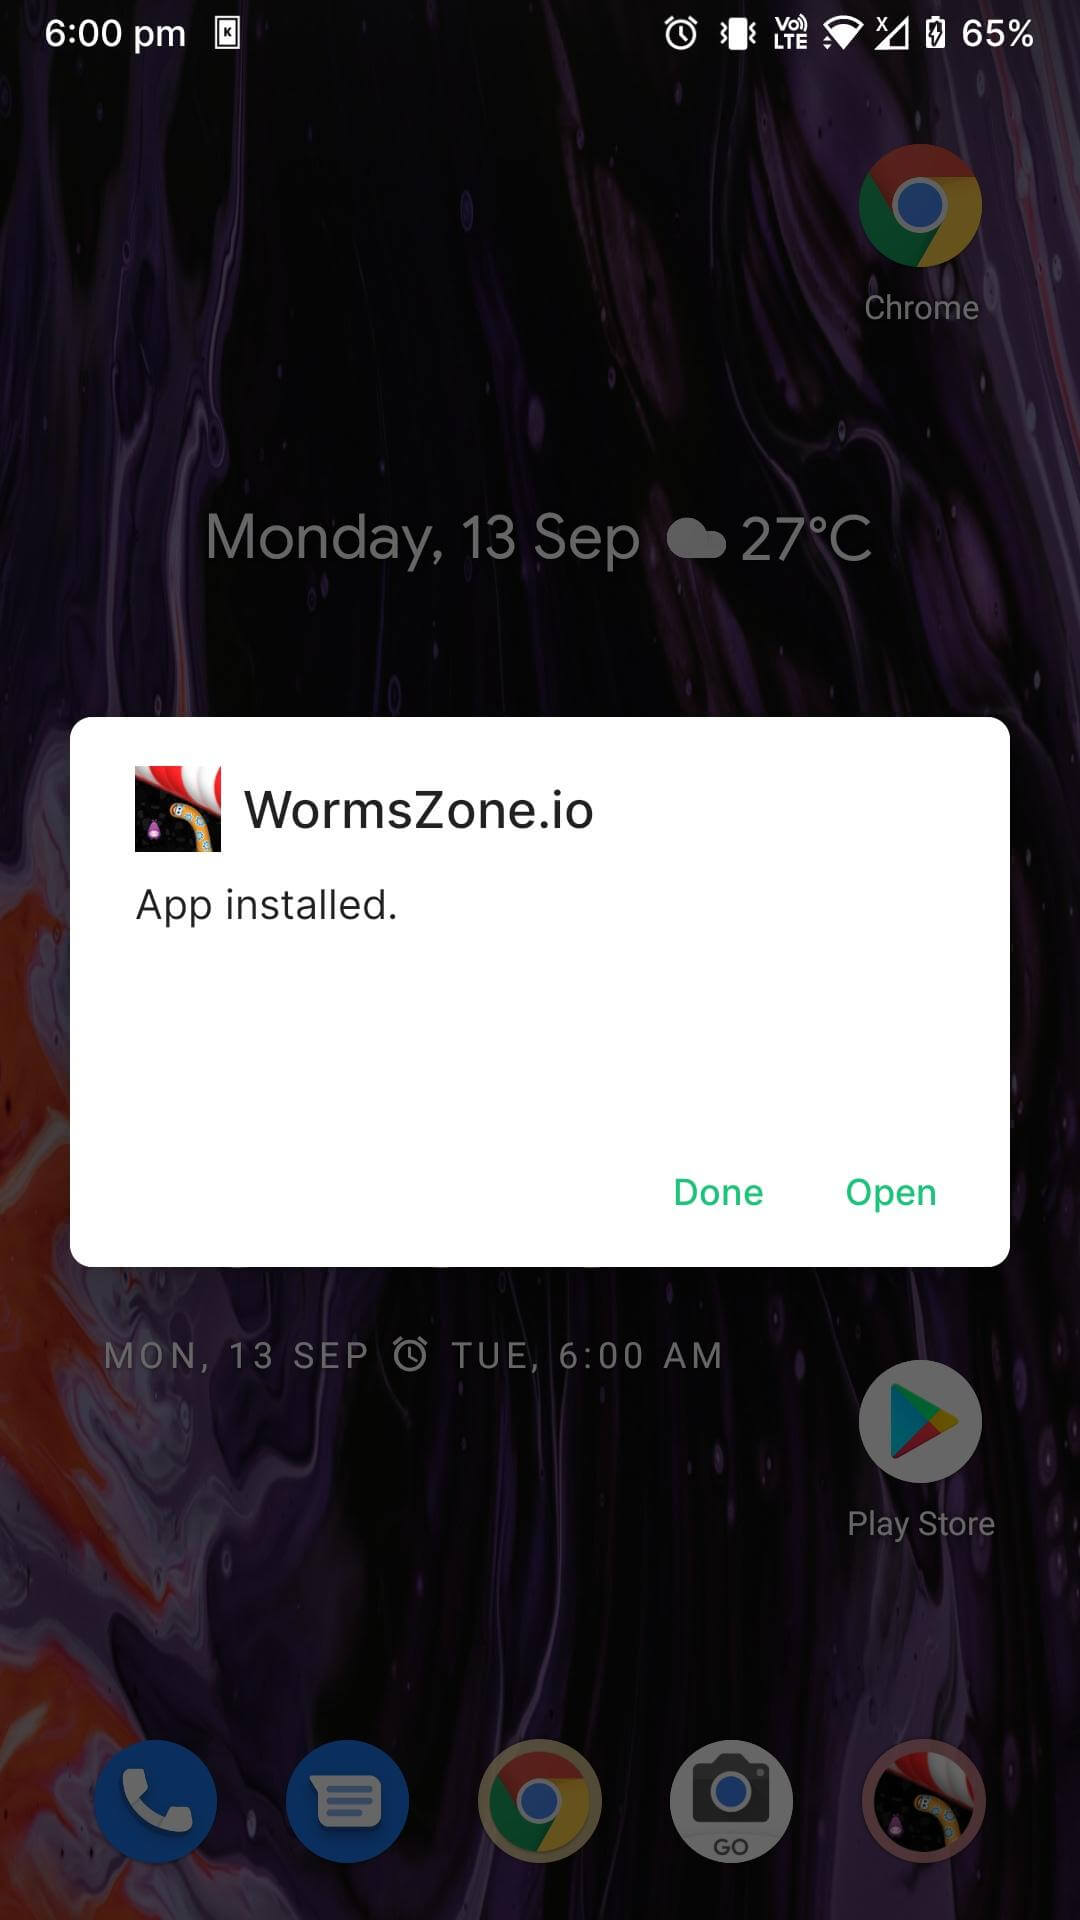 worms zone.io mod apk installed